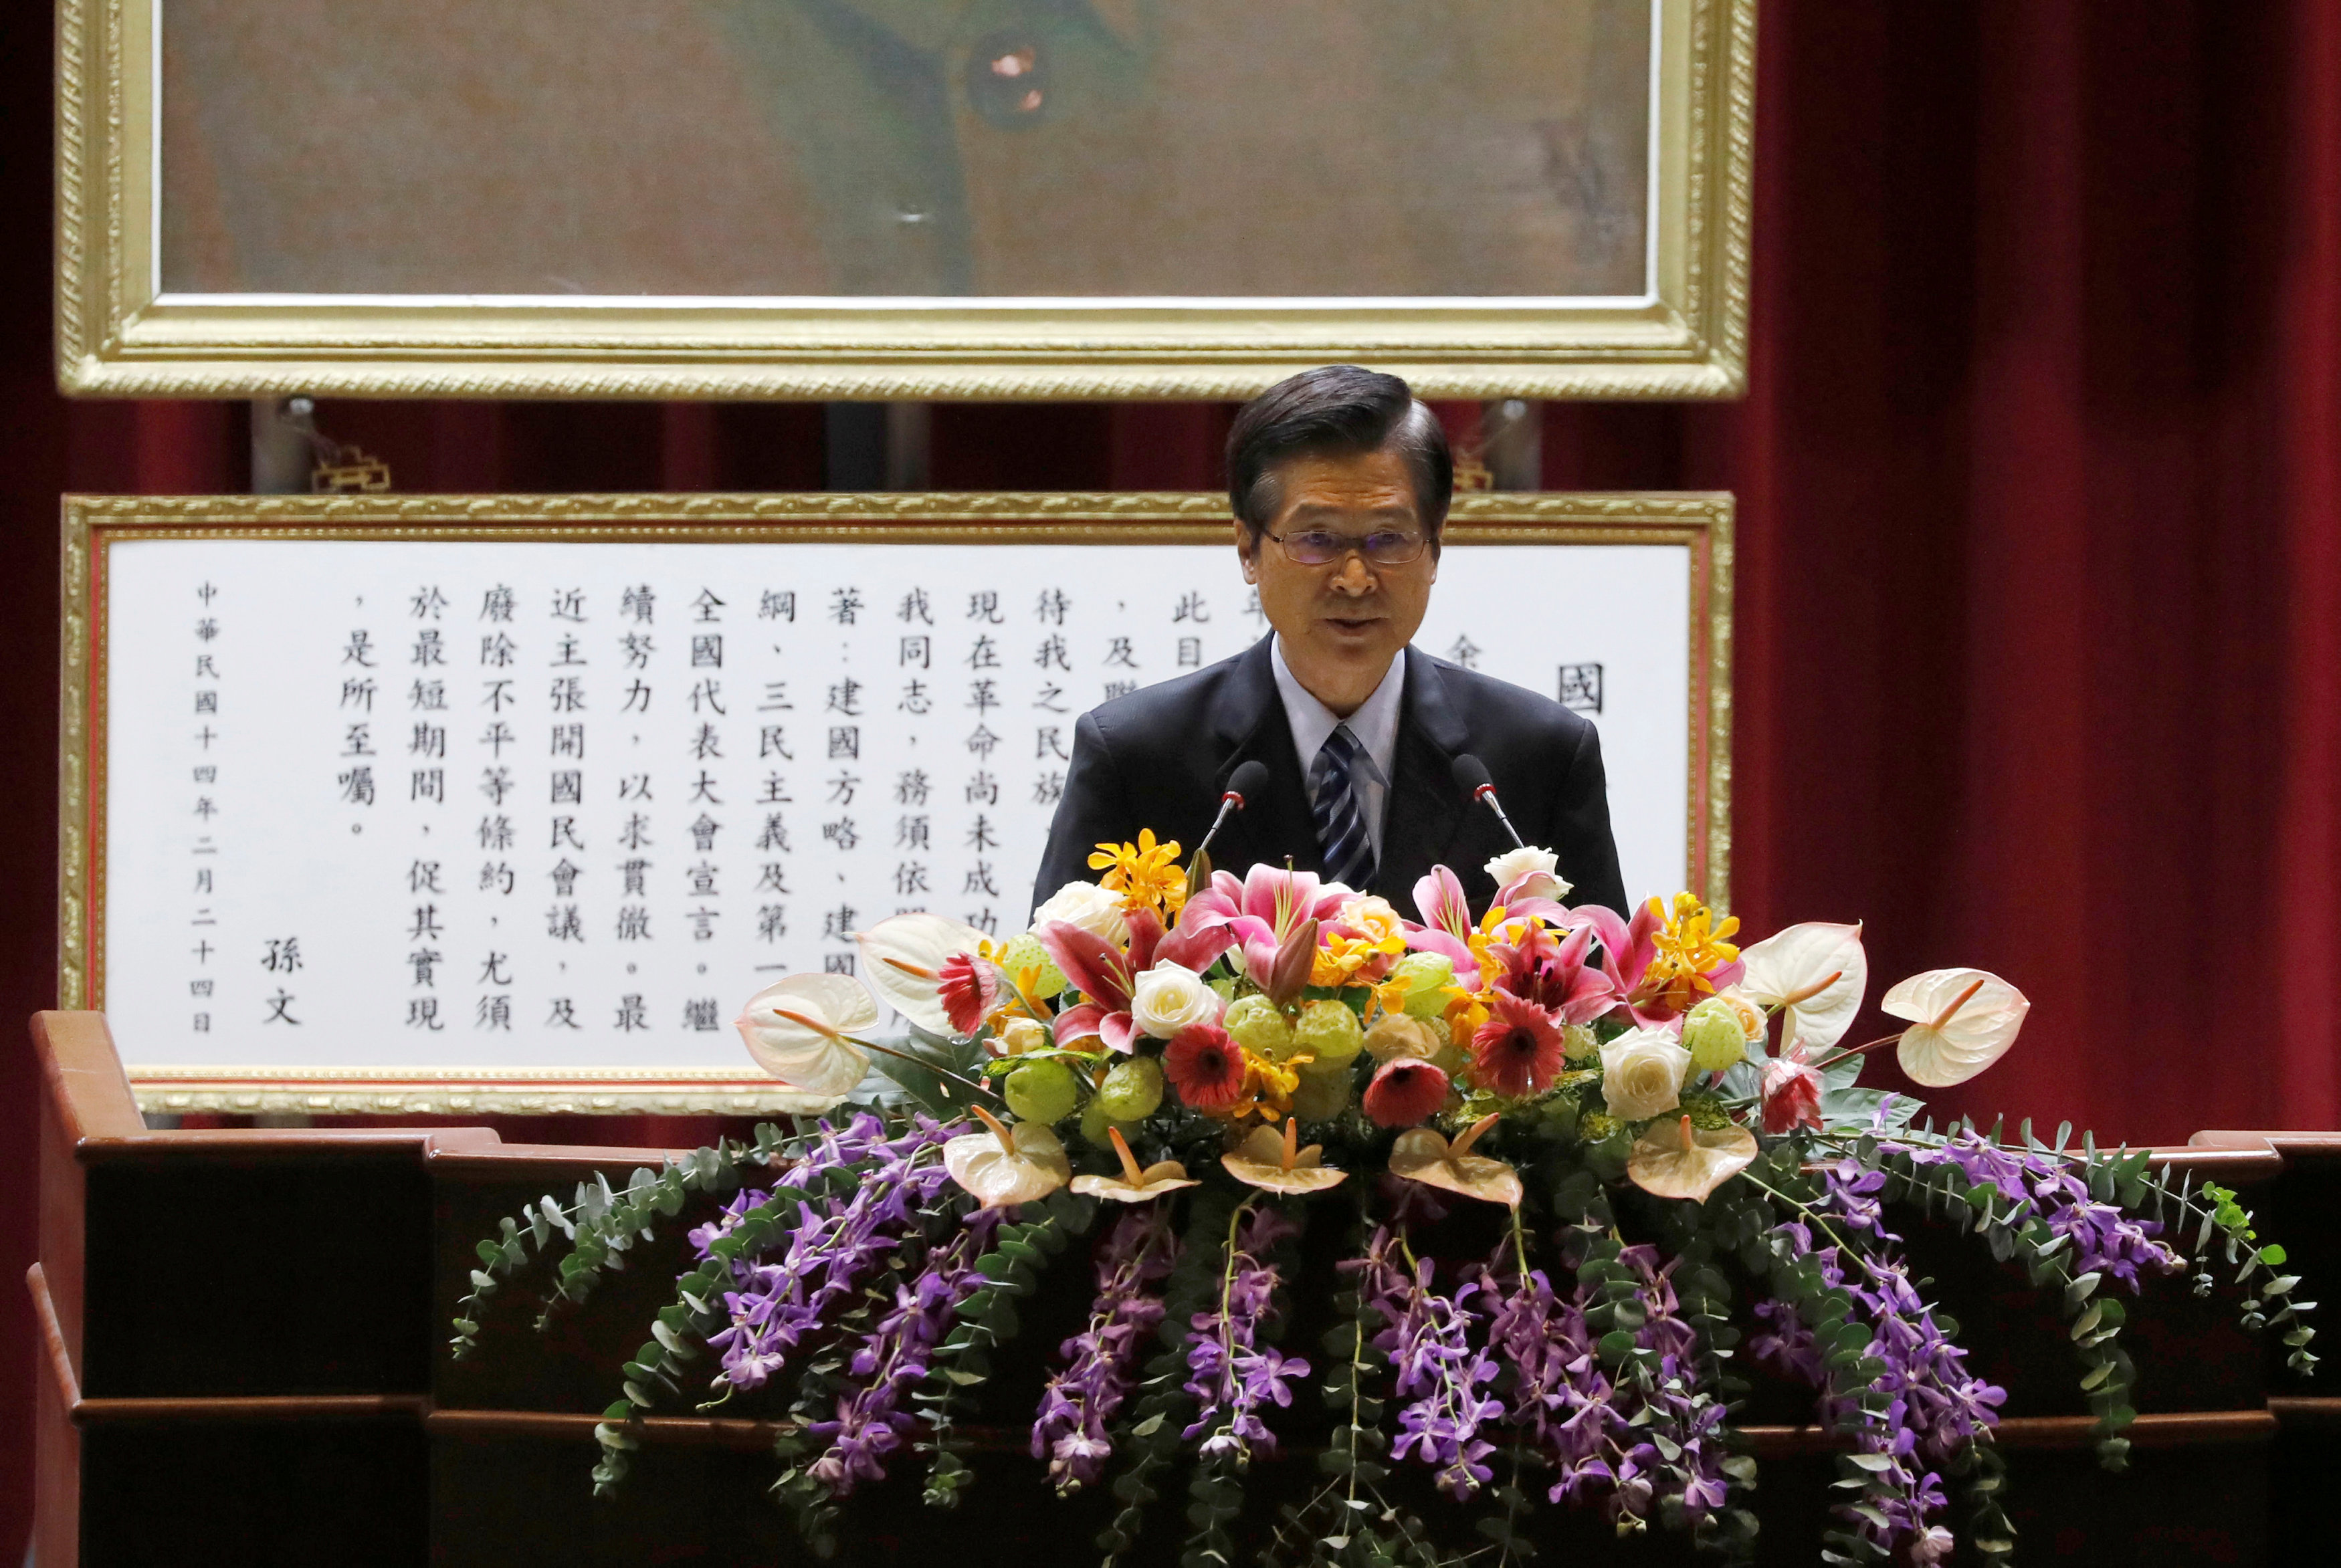  وزير الدفاع الوطني التايواني يلقى كلمة فى لذكرى مضيق تايوان 